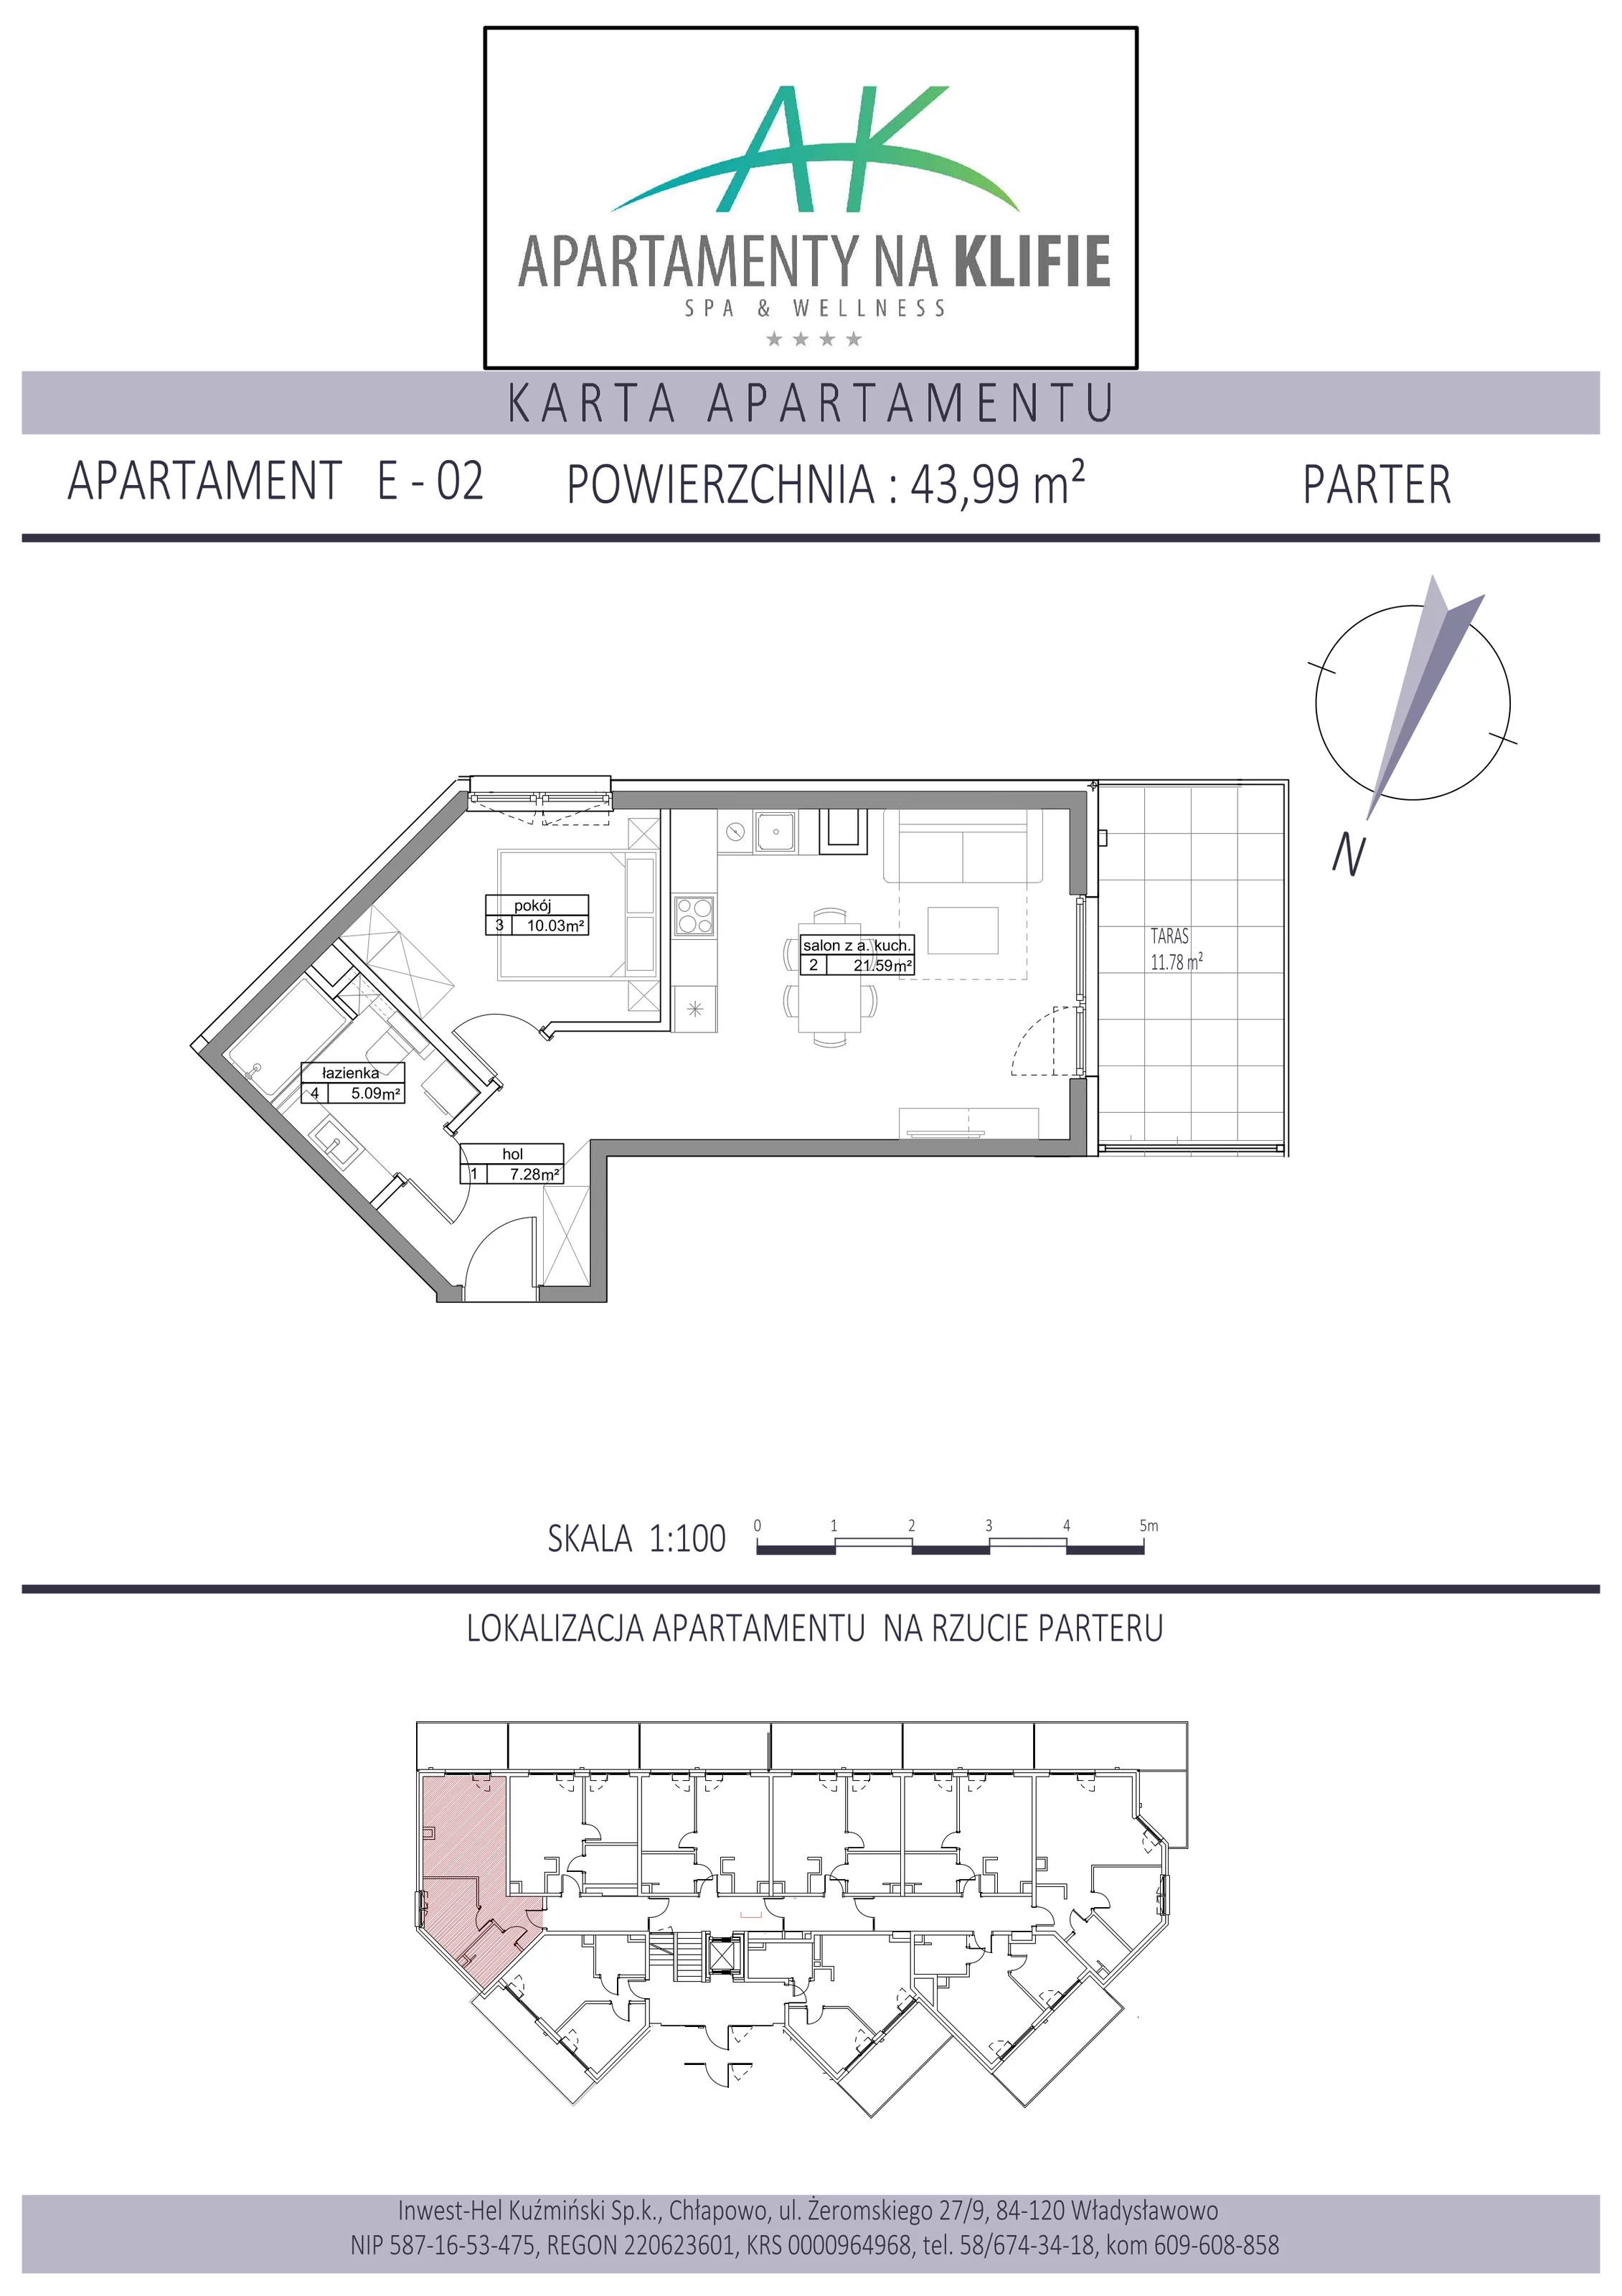 Apartament 43,99 m², parter, oferta nr E-02, Apartamenty na Klifie, Władysławowo, Chłapowo, ul. Żeromskiego 27